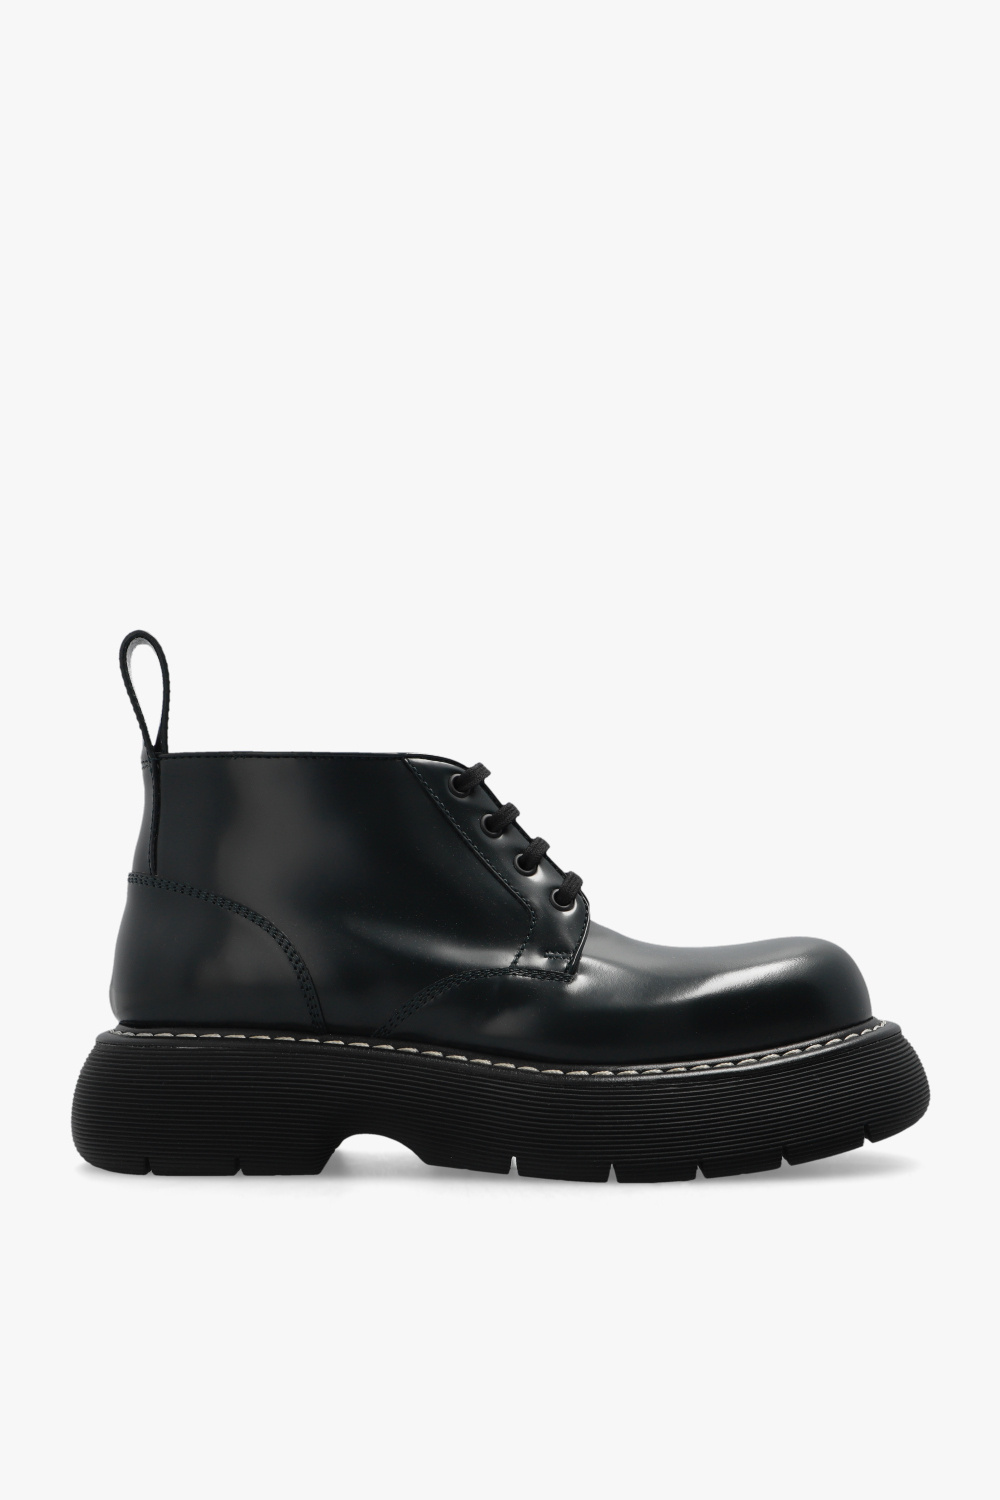 Bottega Veneta ‘Swell’ shoes